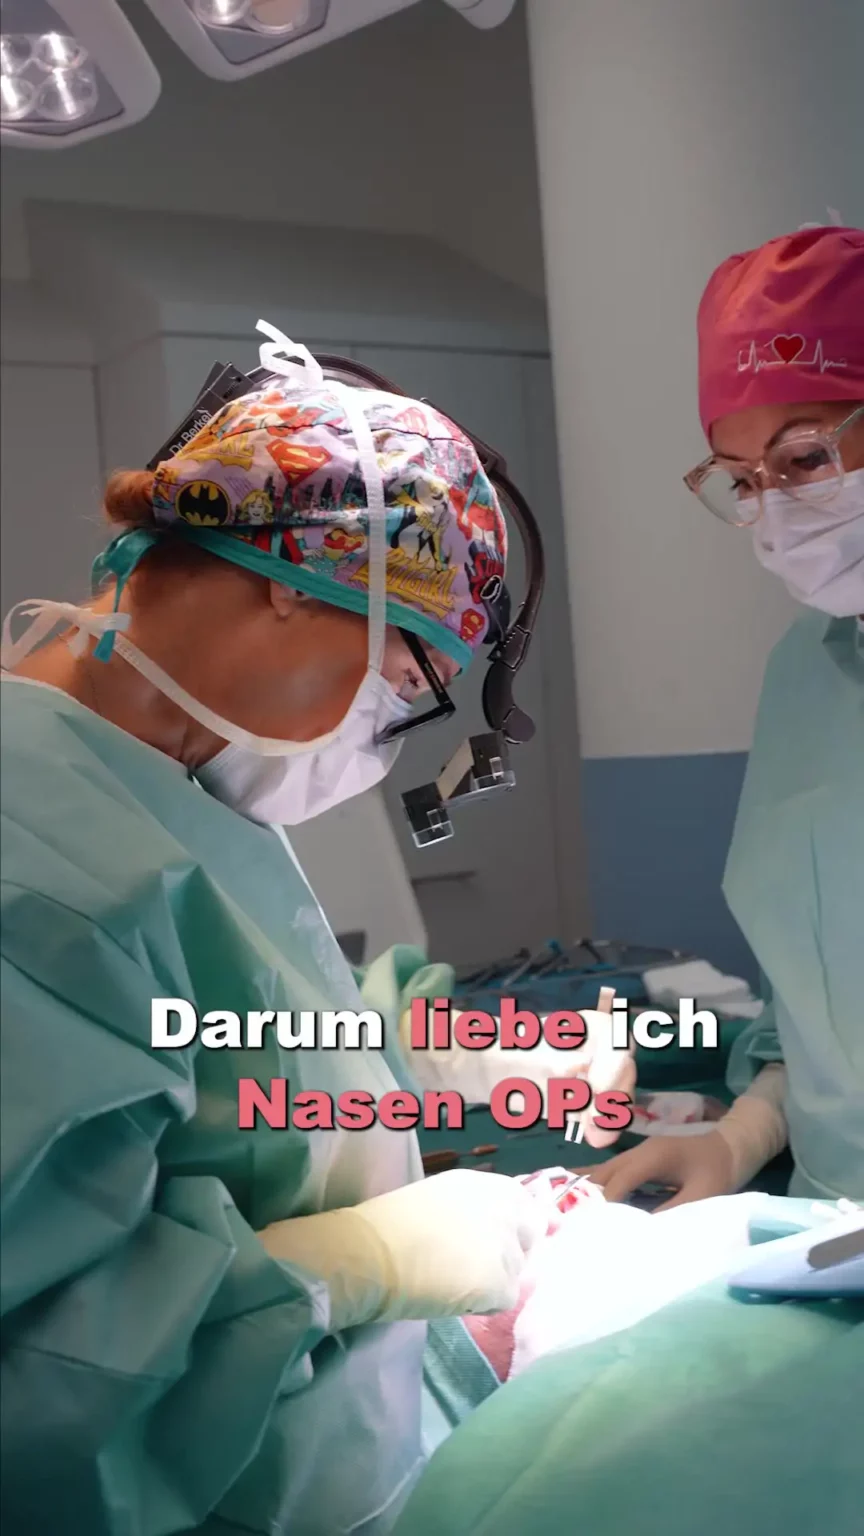 Aufnahme von Dr. Berkei im OP mit dem Text "Darum liebe ich Nasen OPs".